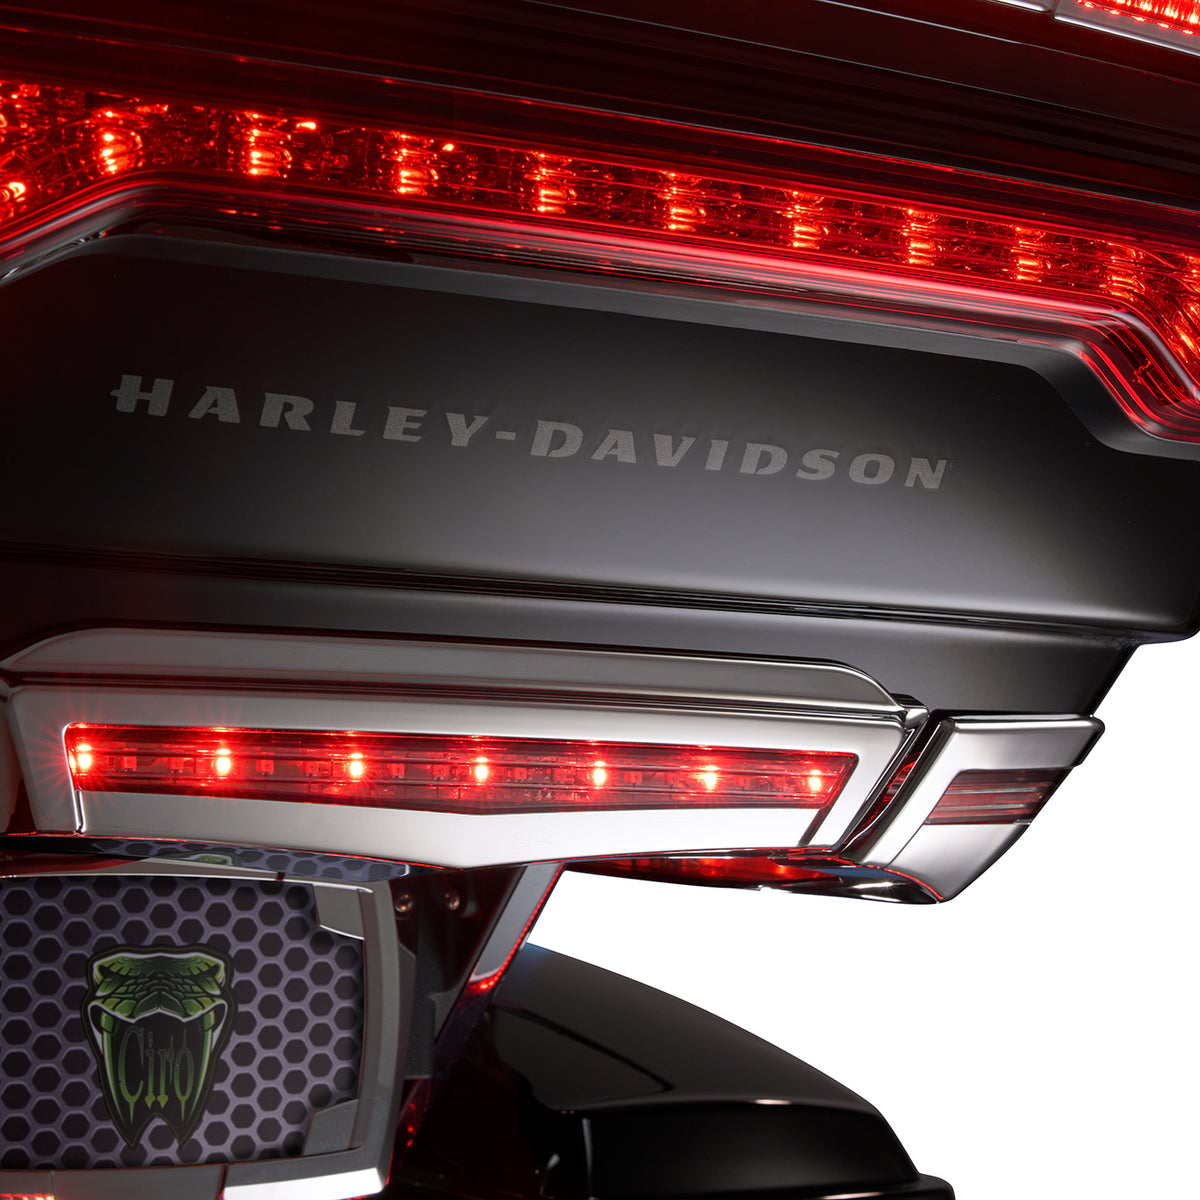 Ciro Accesorios de Luz para Tour Pak Harley Davidson Touring